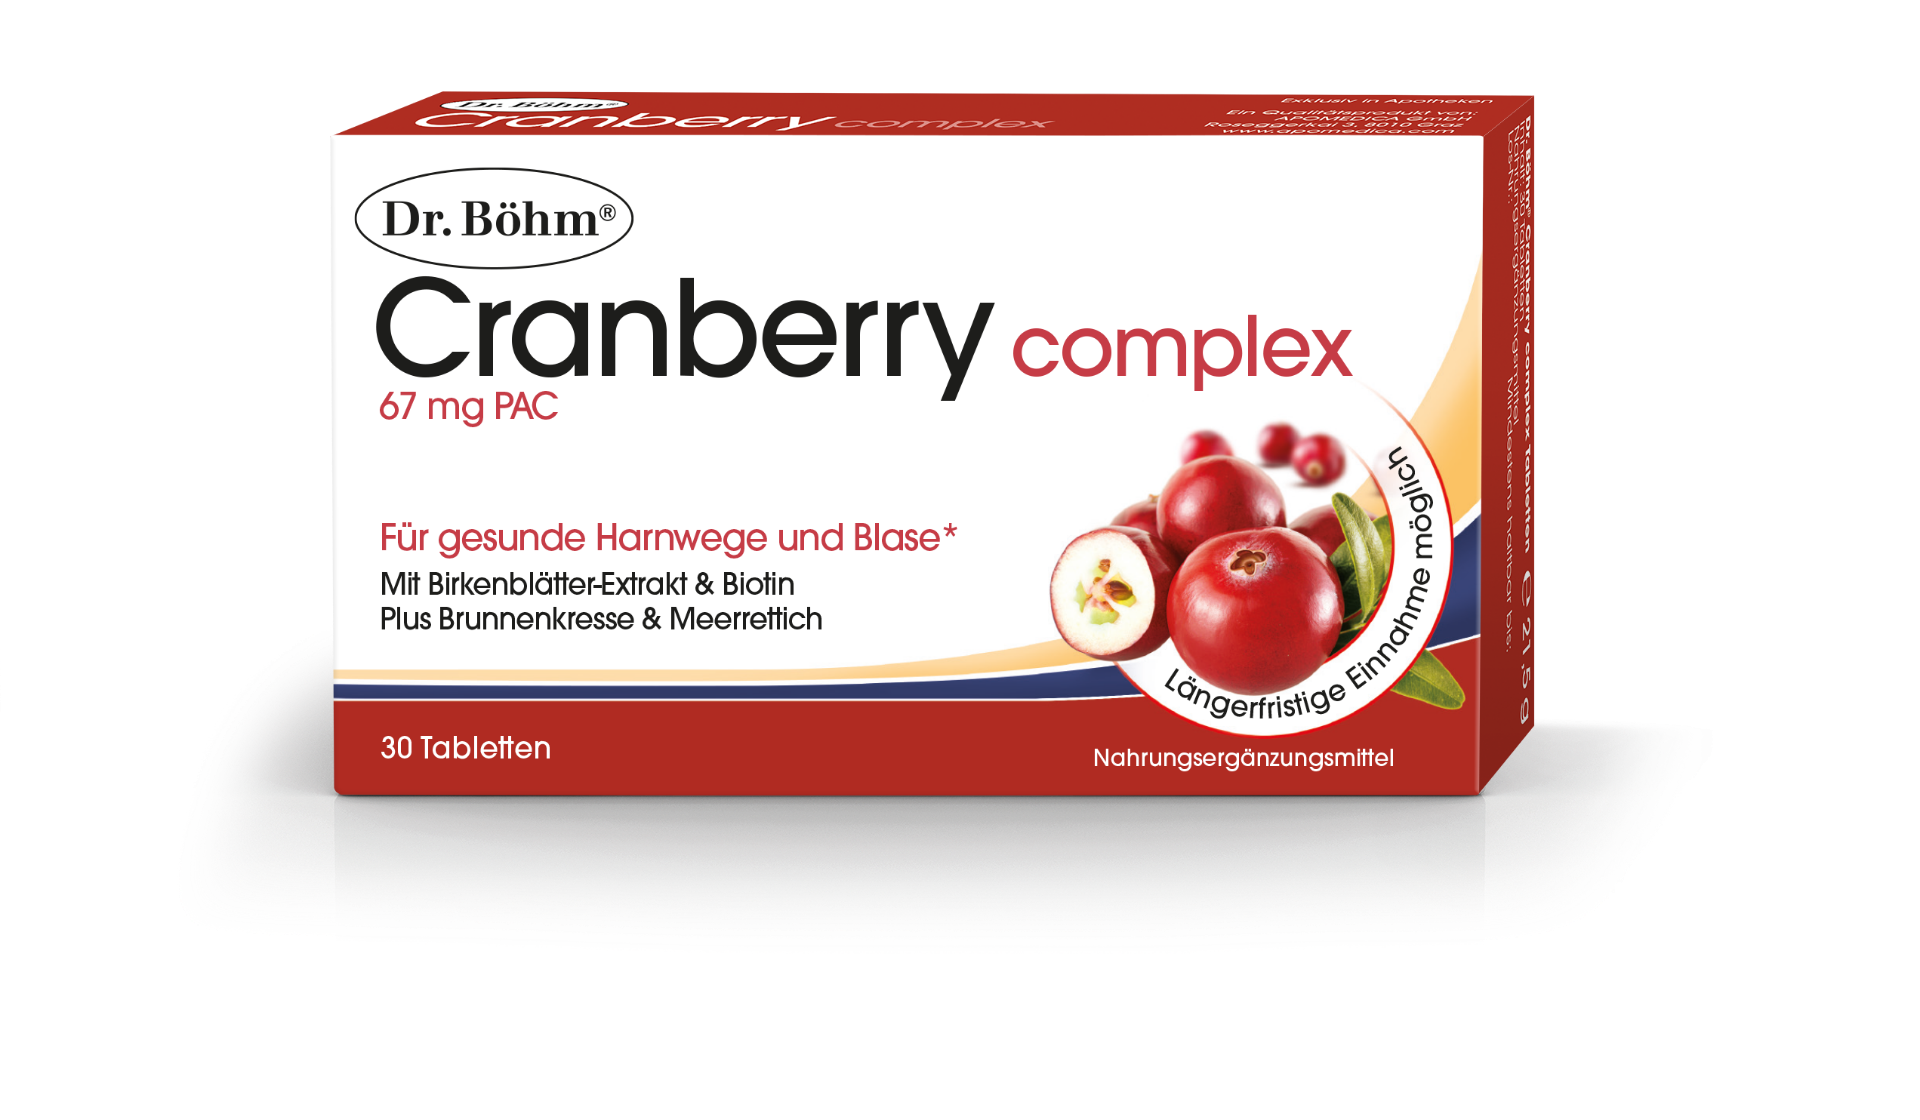 Dr. Böhm Cranberry complex